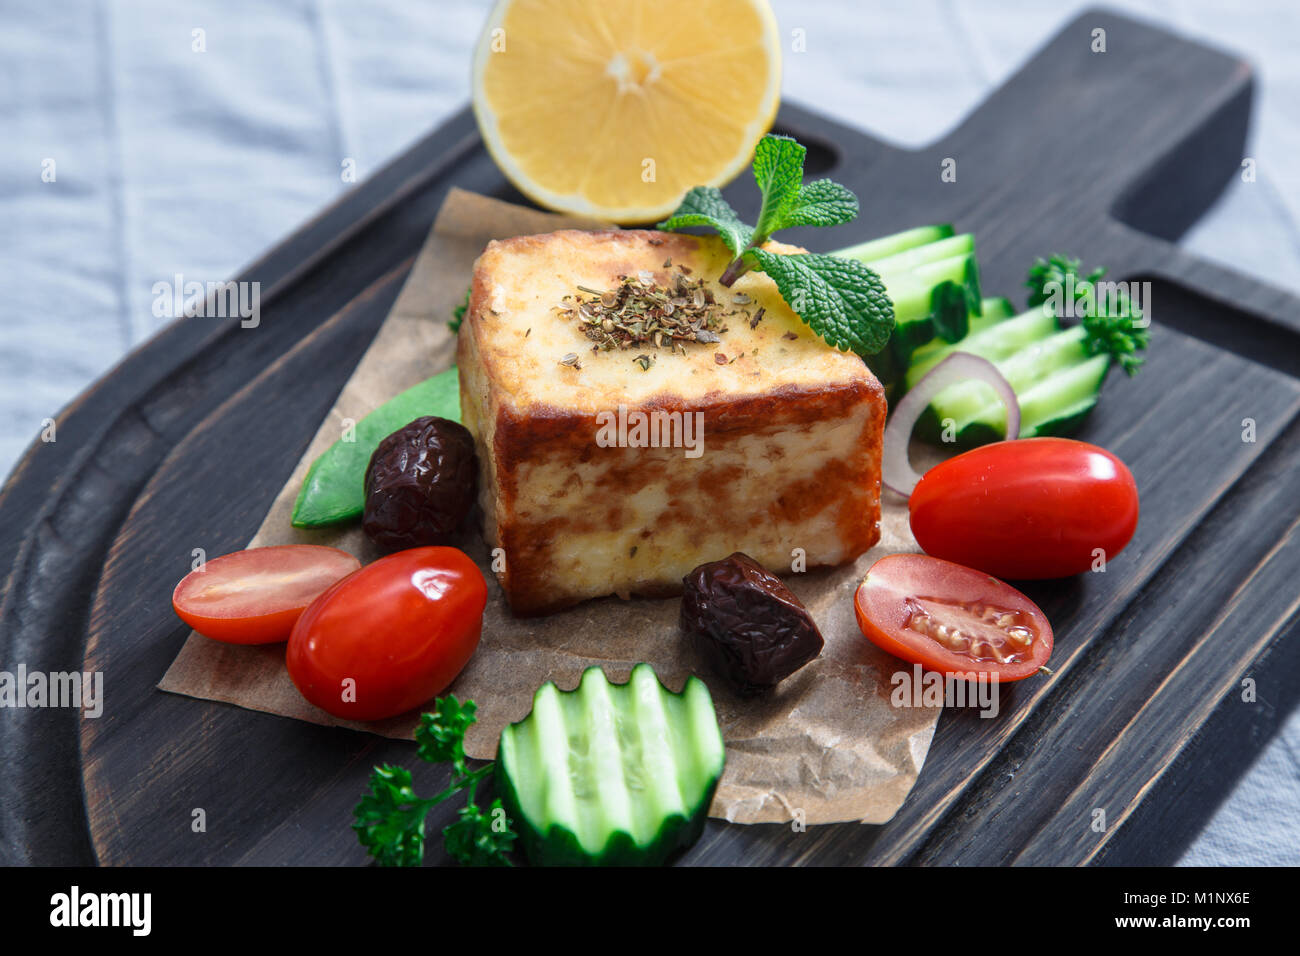 Fried halloumi cheese or cheese Saganaki Stock Photo - Alamy